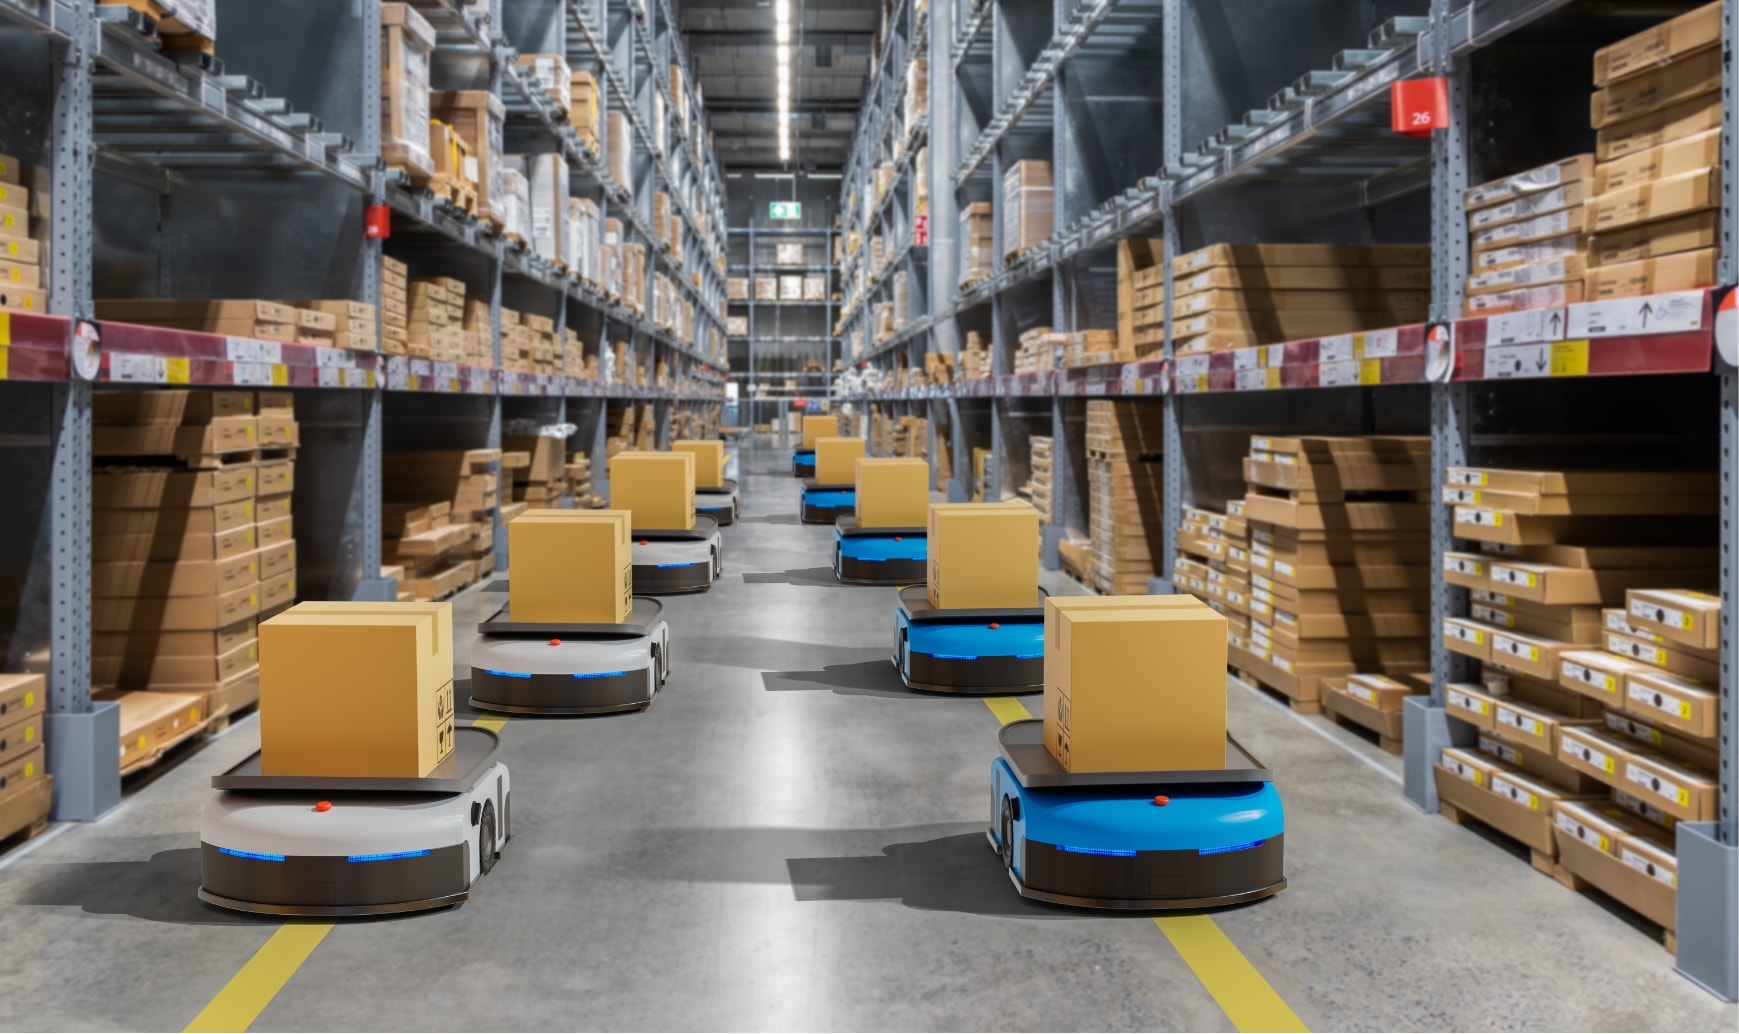 Plusieurs robots transportent des colis dans un entrepôt.